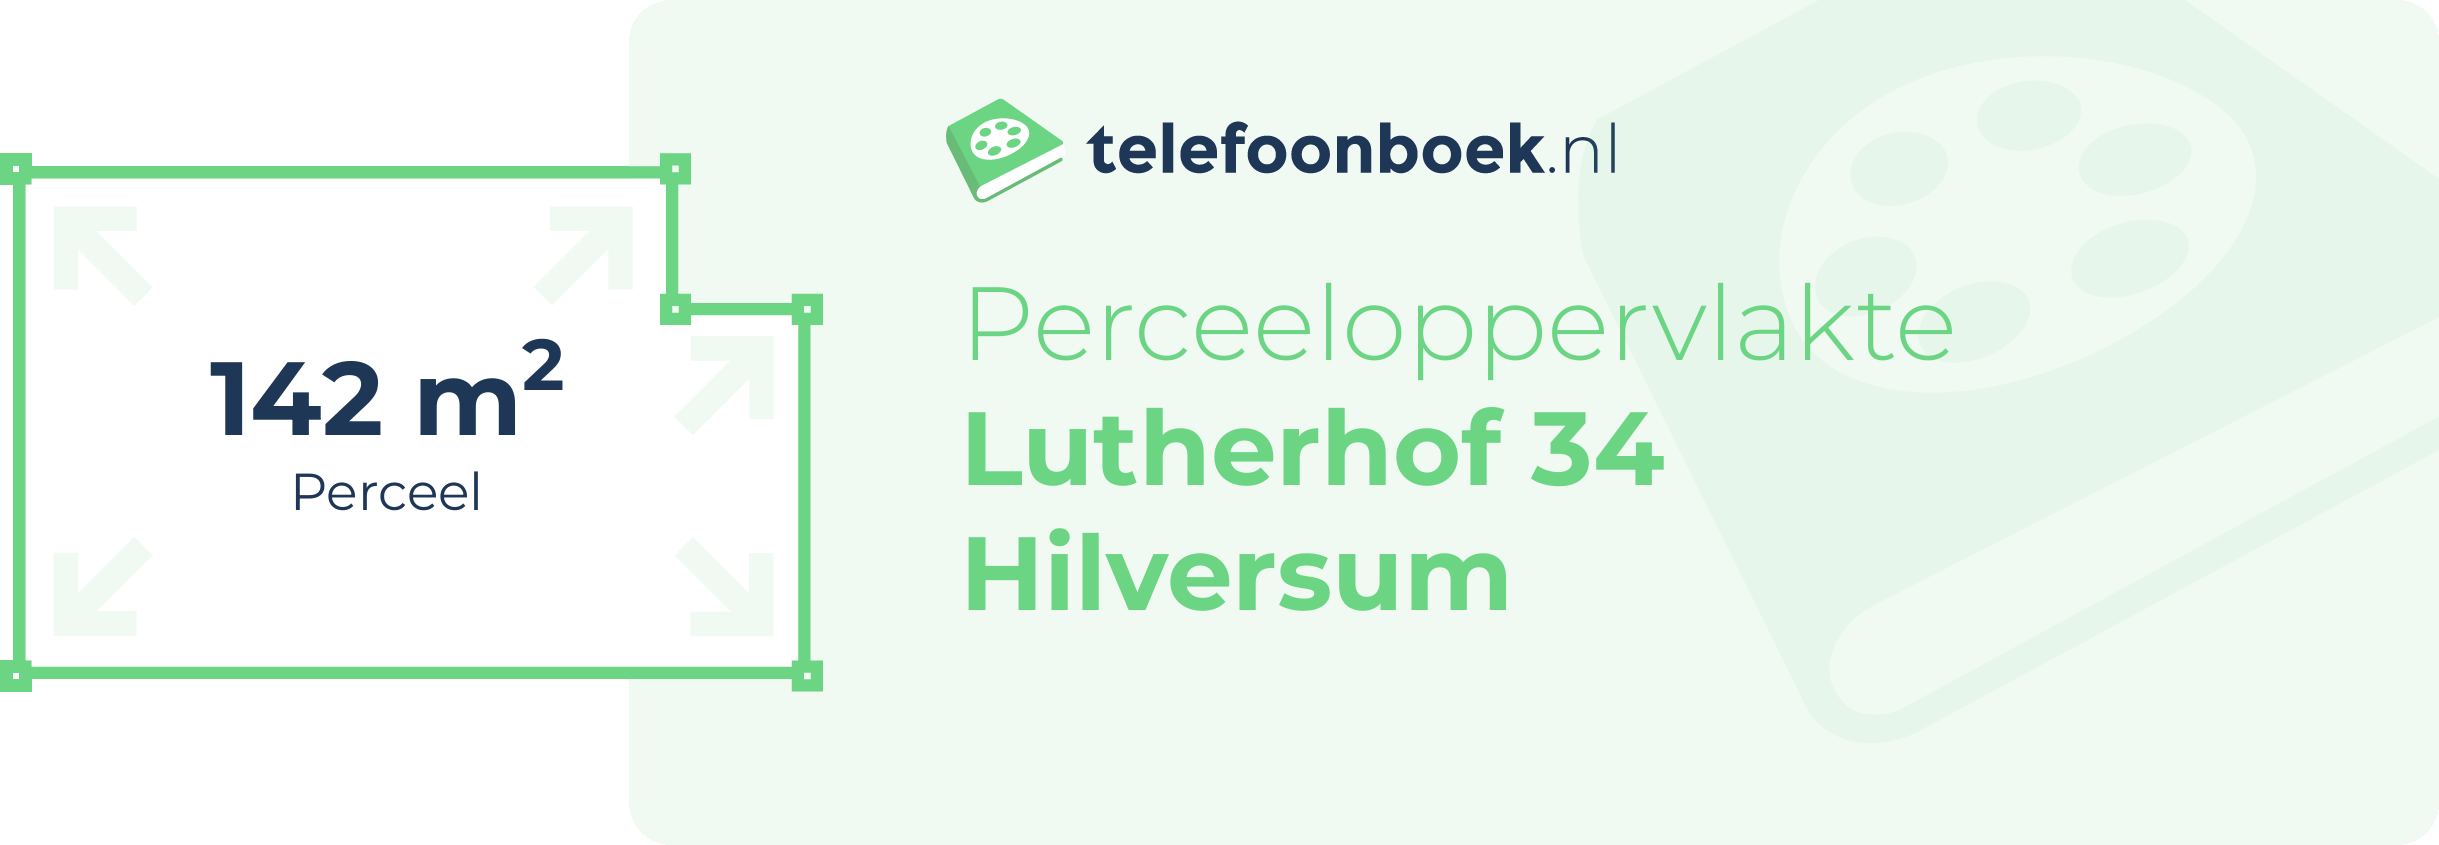 Perceeloppervlakte Lutherhof 34 Hilversum